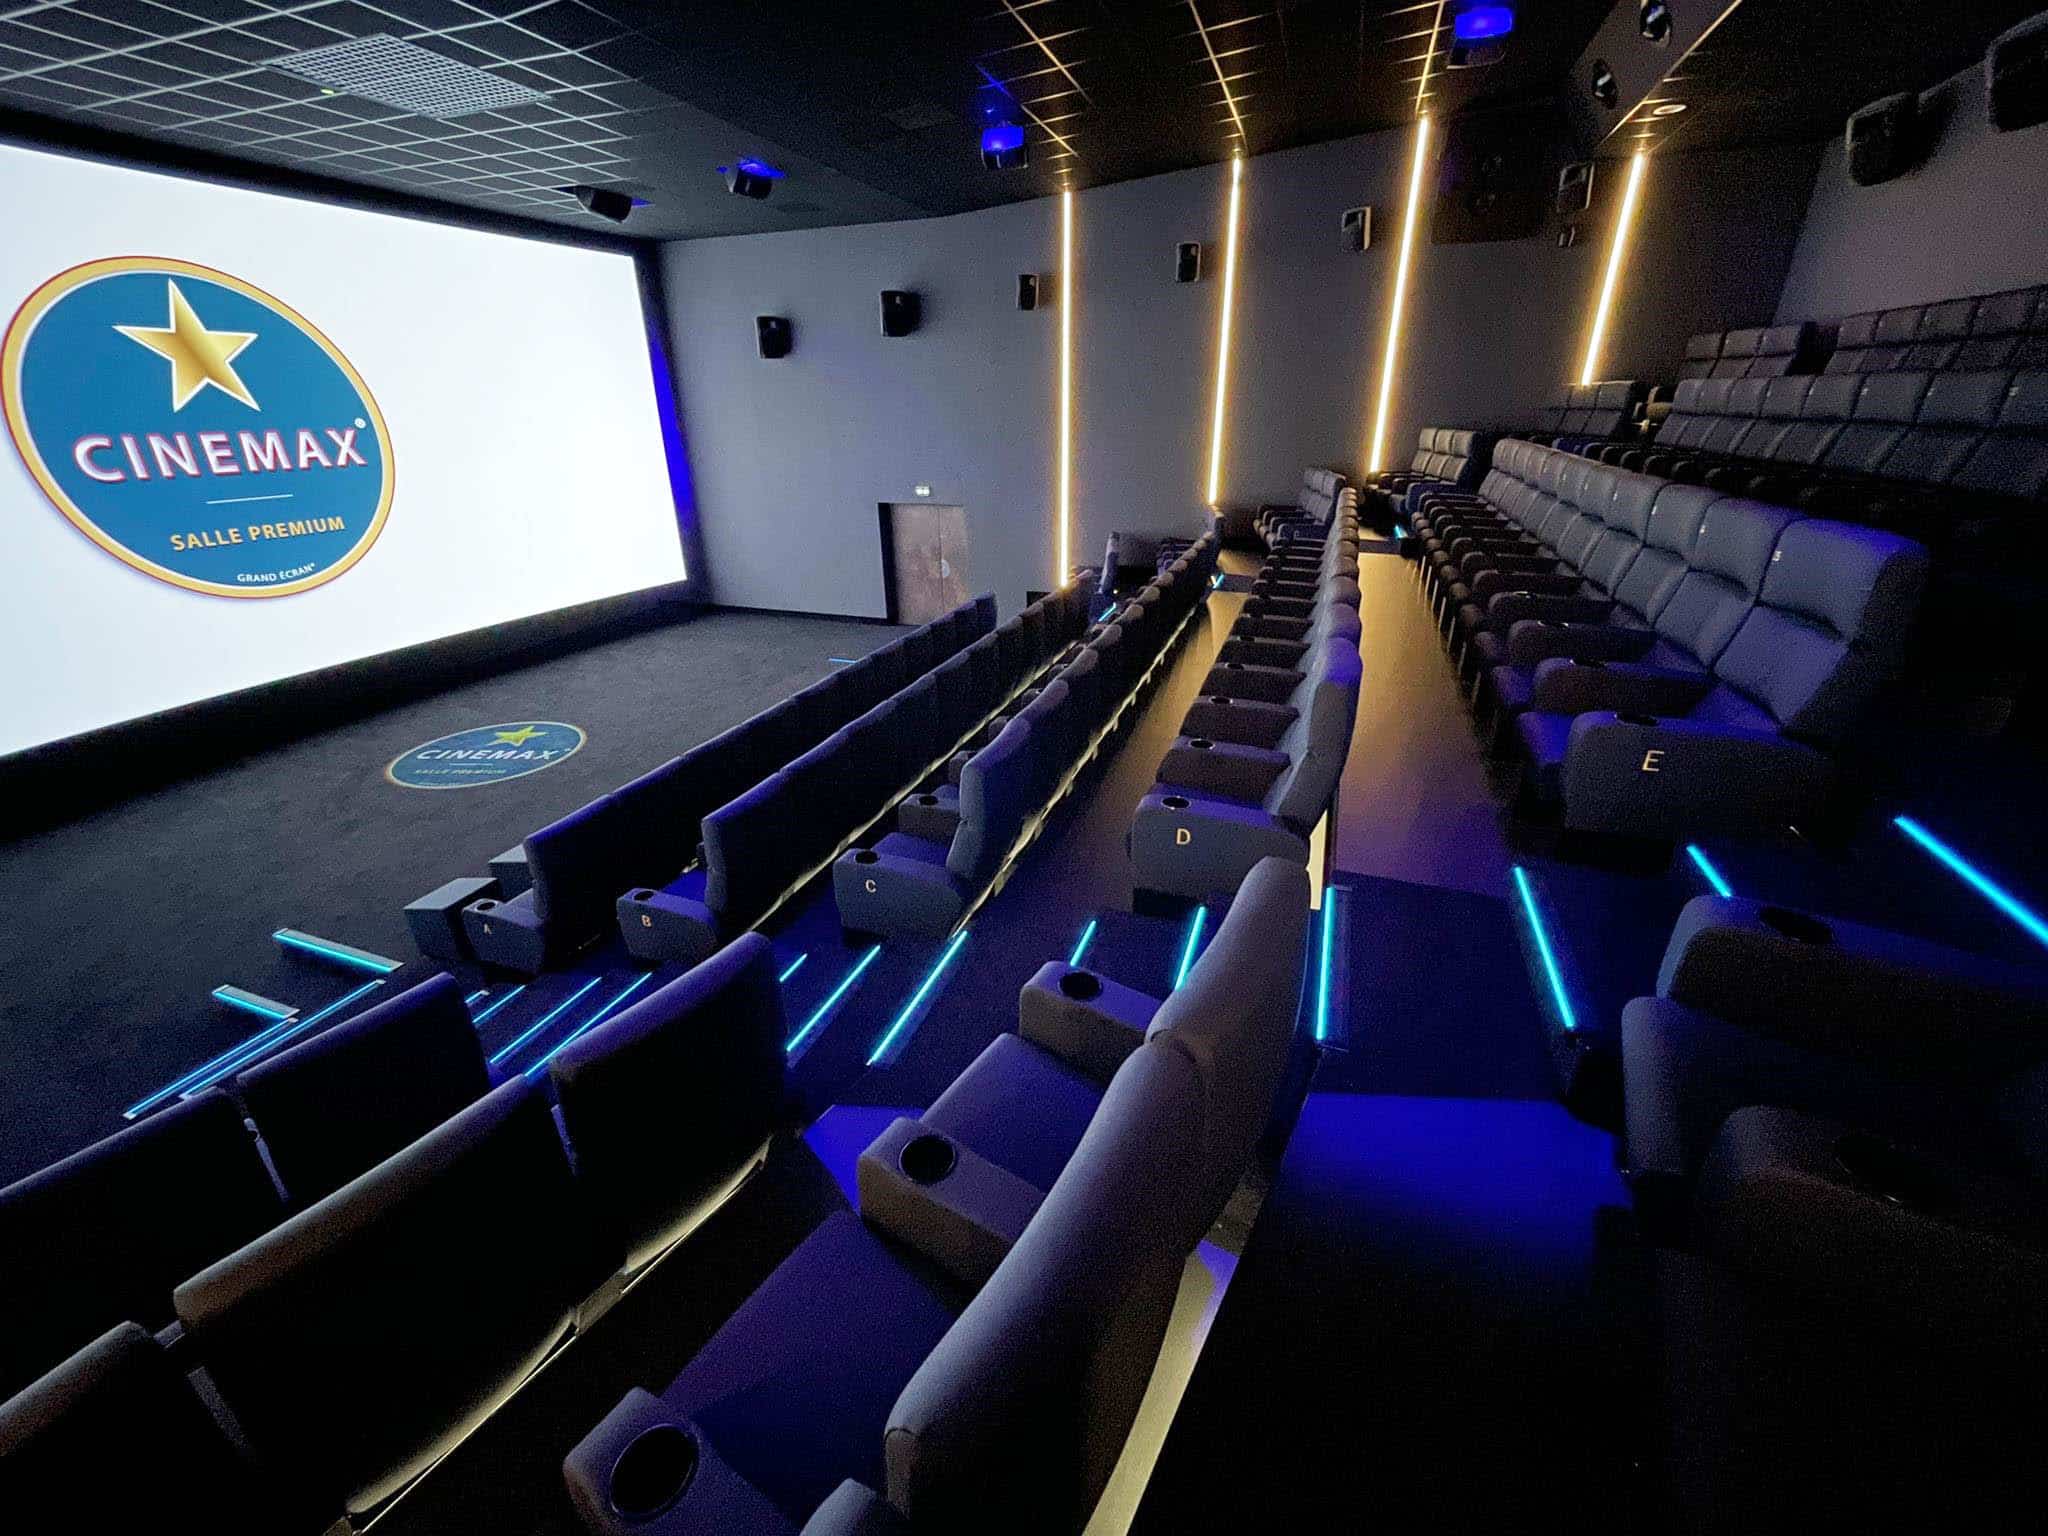 Salle Premium Cinémax